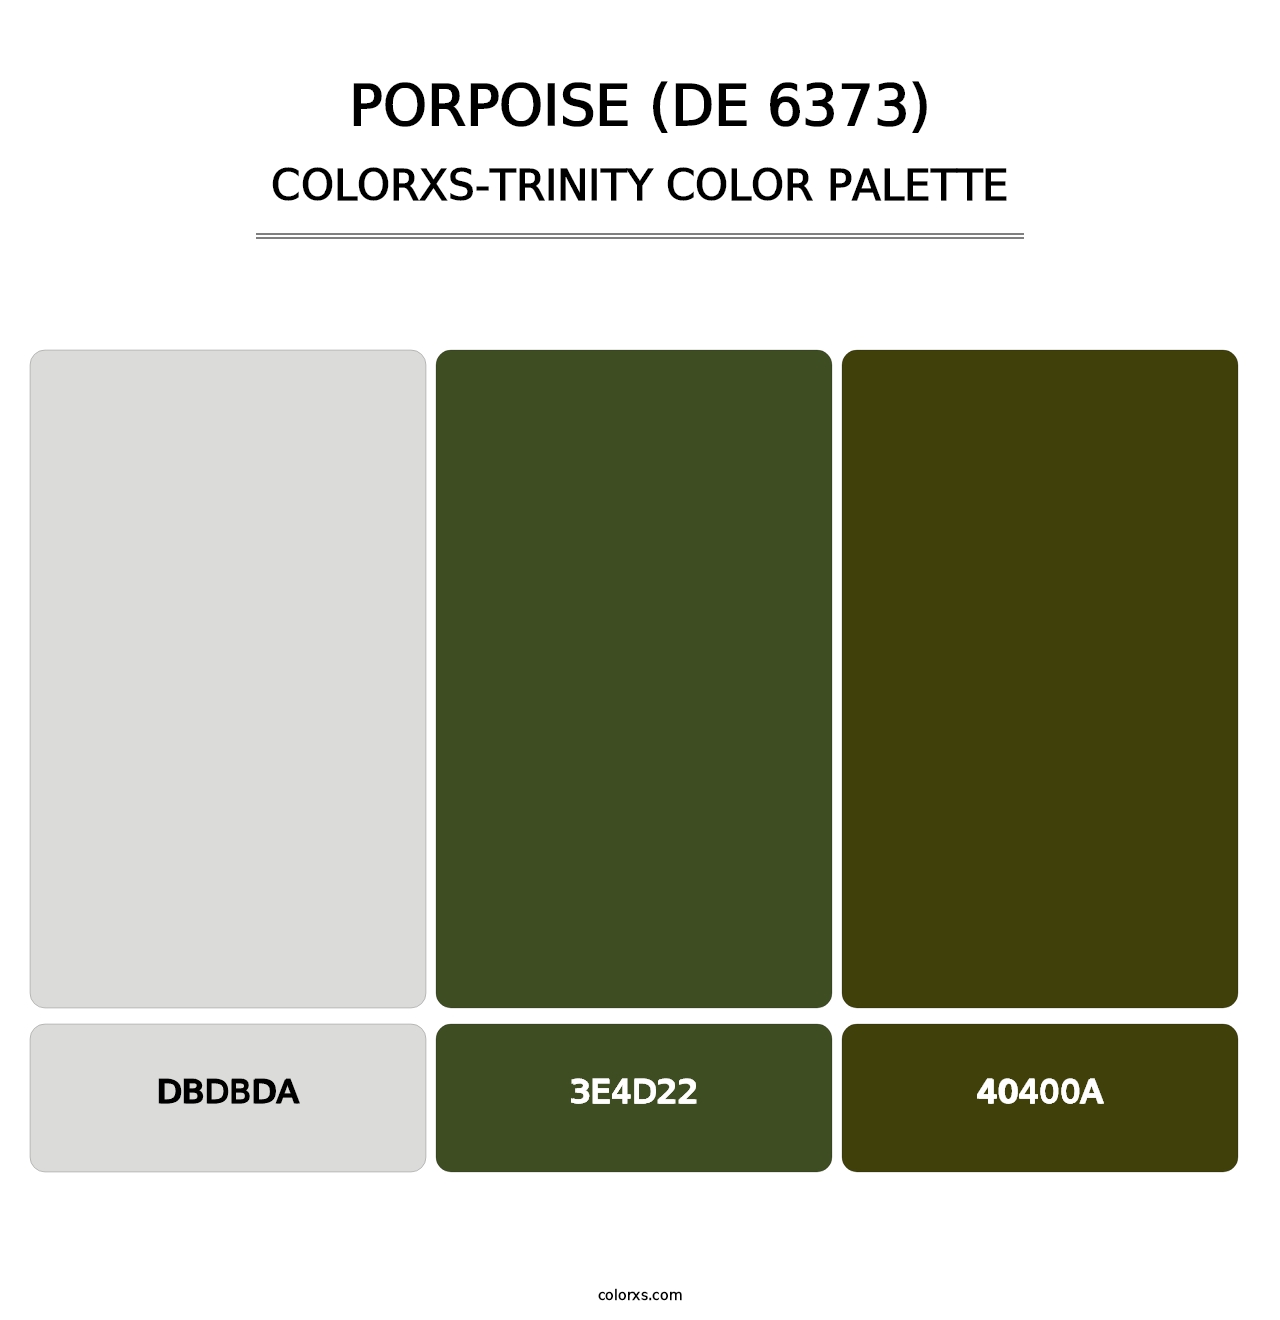 Porpoise (DE 6373) - Colorxs Trinity Palette